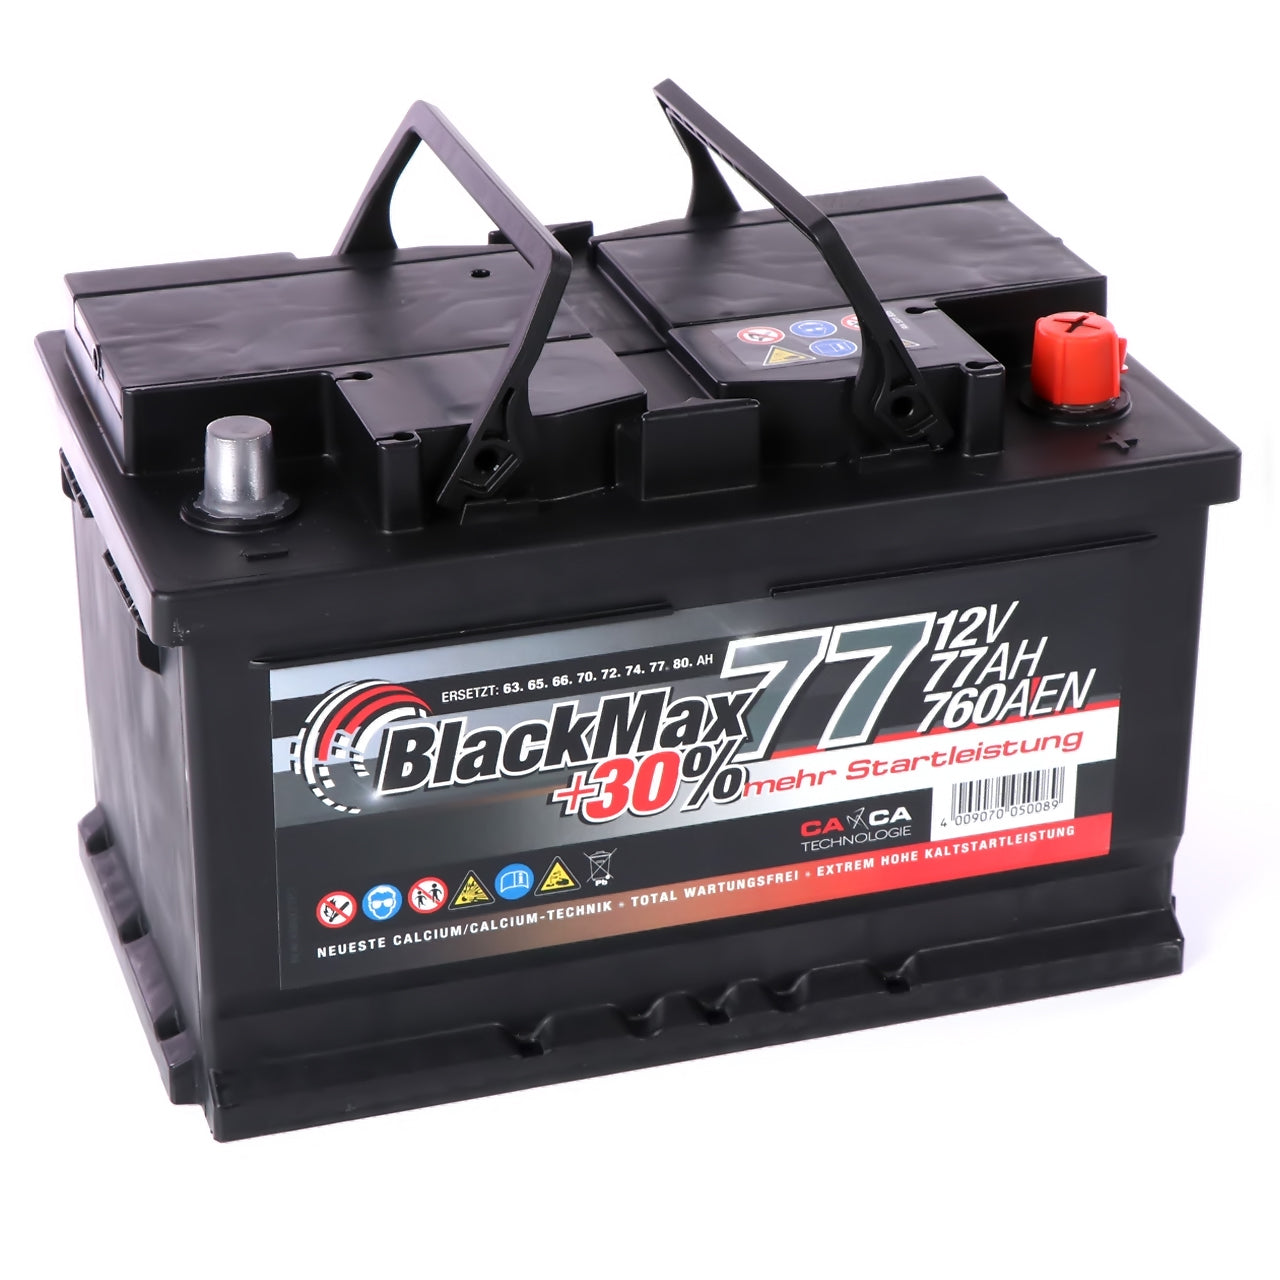 BlackMax +30 Edition Autobatterie 12V 77Ah 760A/EN